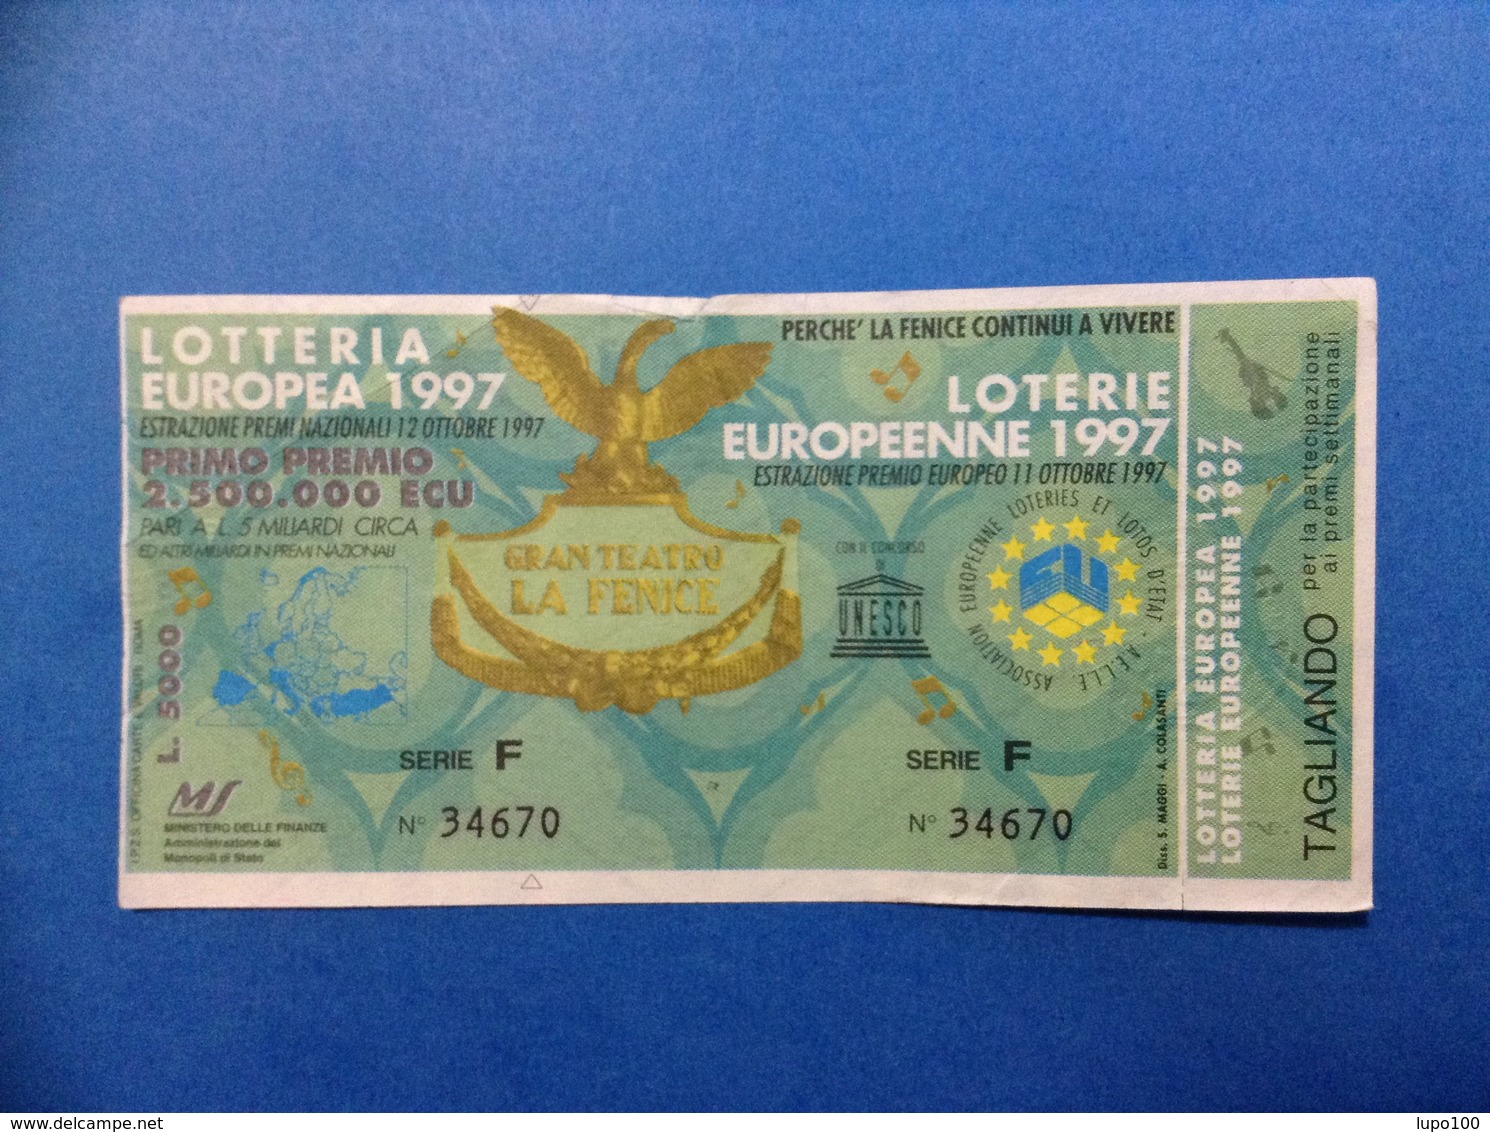 1997 BIGLIETTO LOTTERIA EUROPEA E NAZIONALE UNESCO GRAN TEATRO LA FENICE - Billetes De Lotería